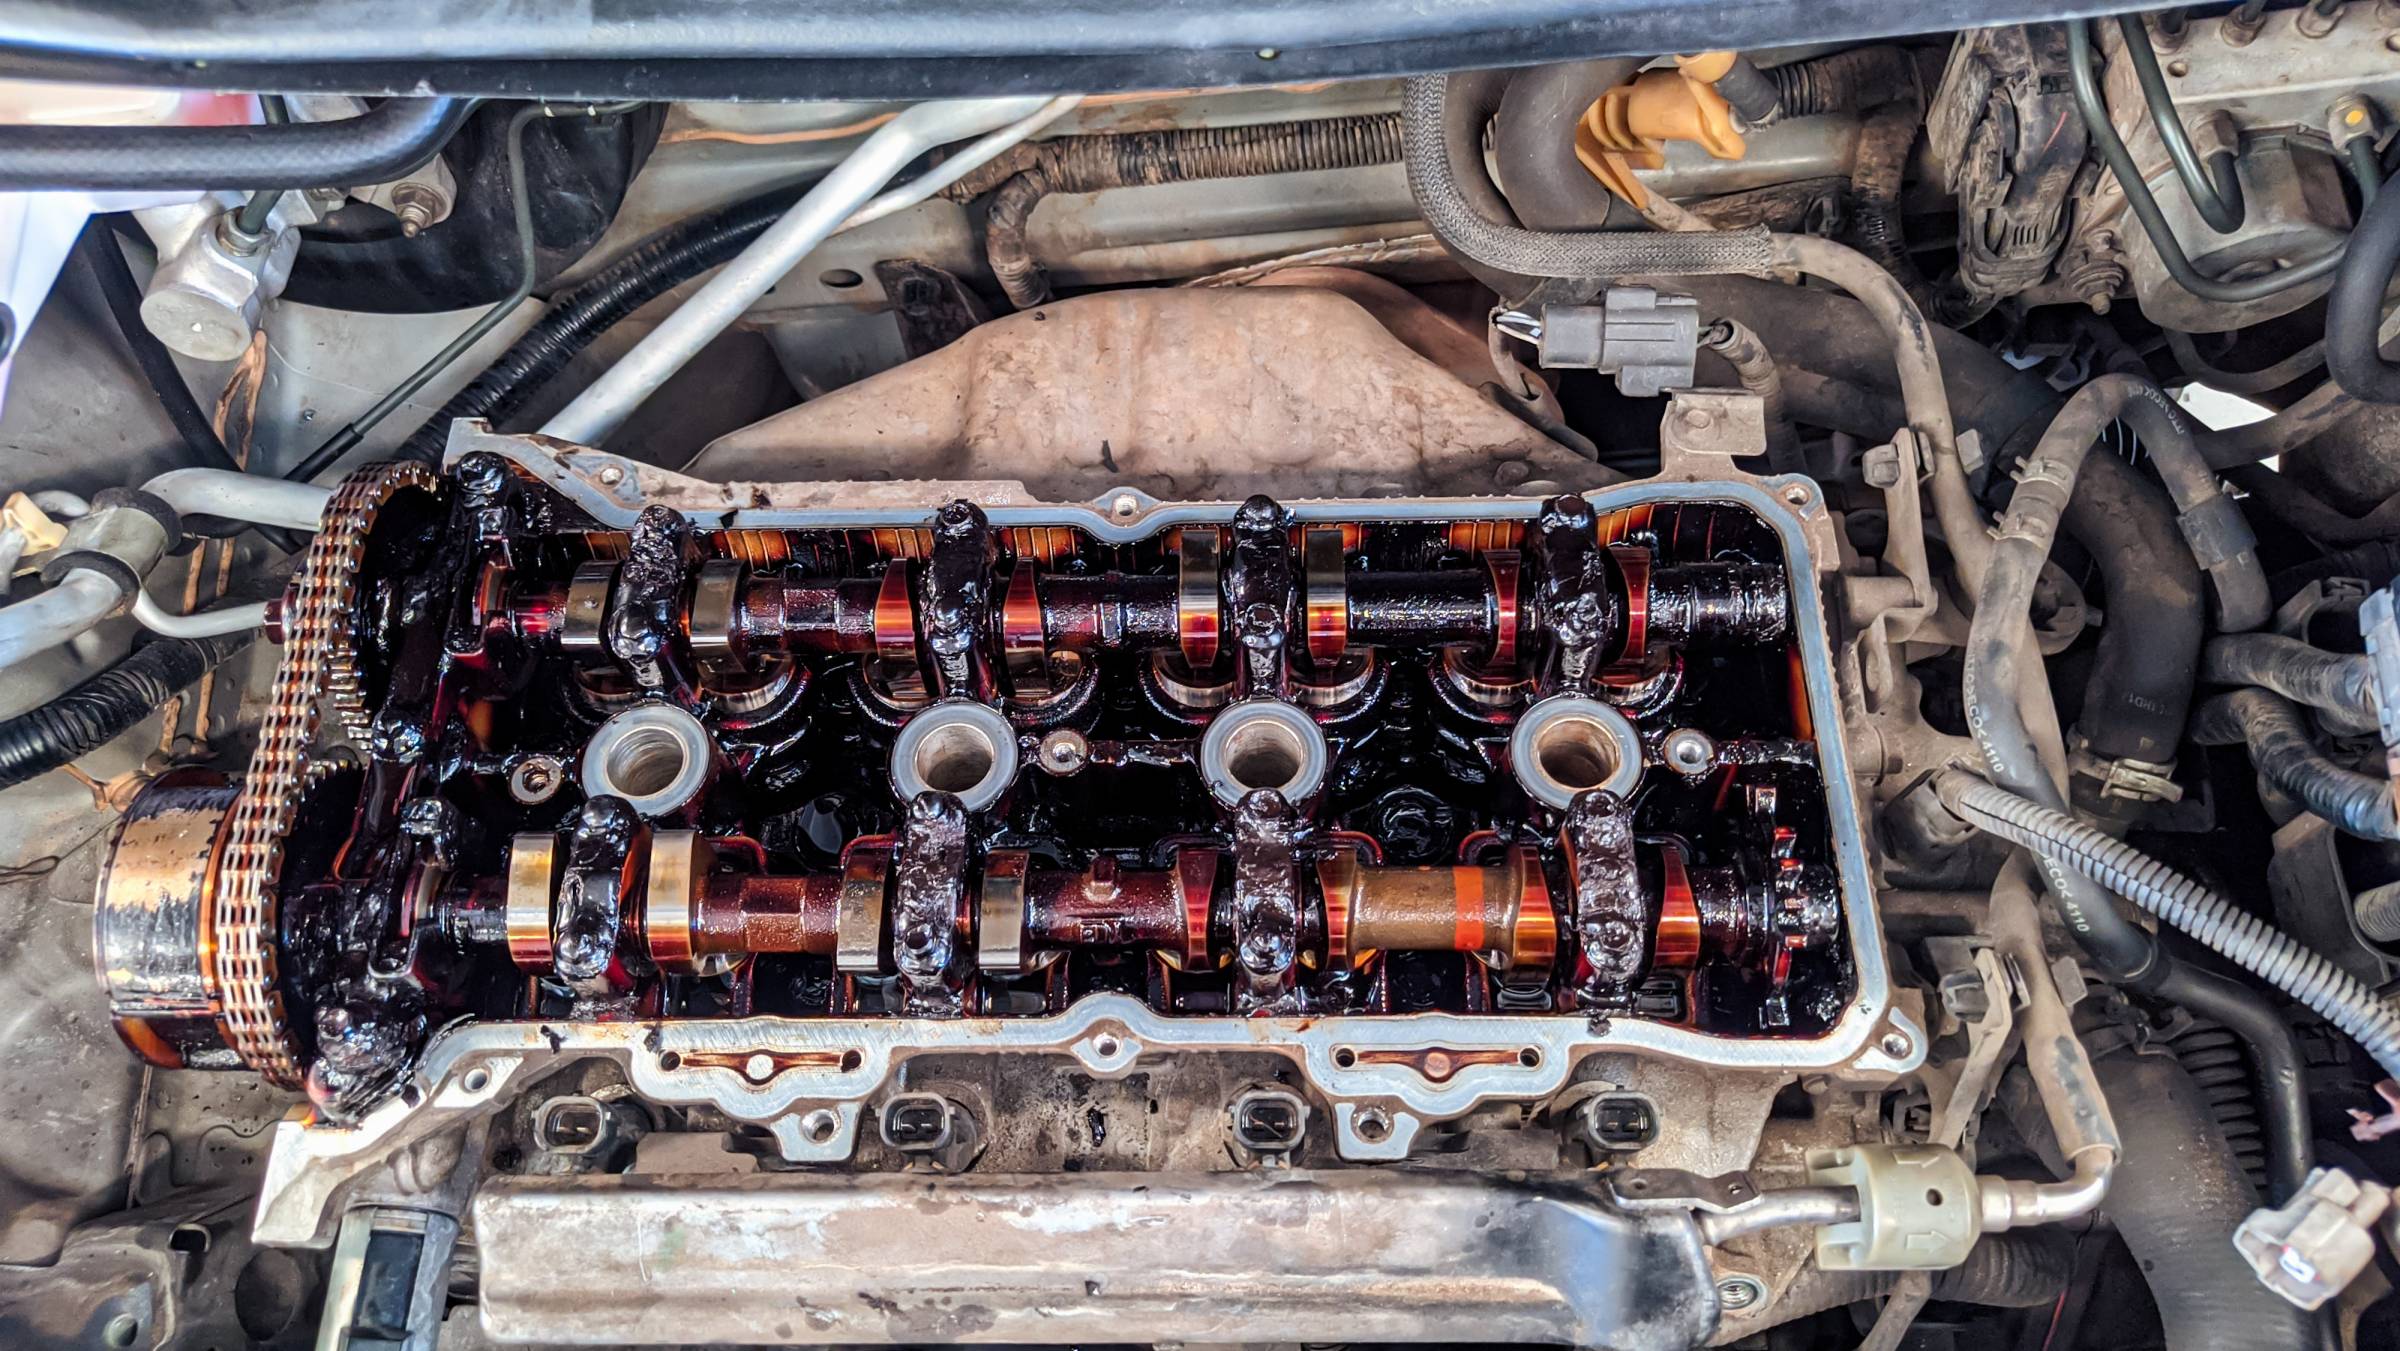 an oily car engine